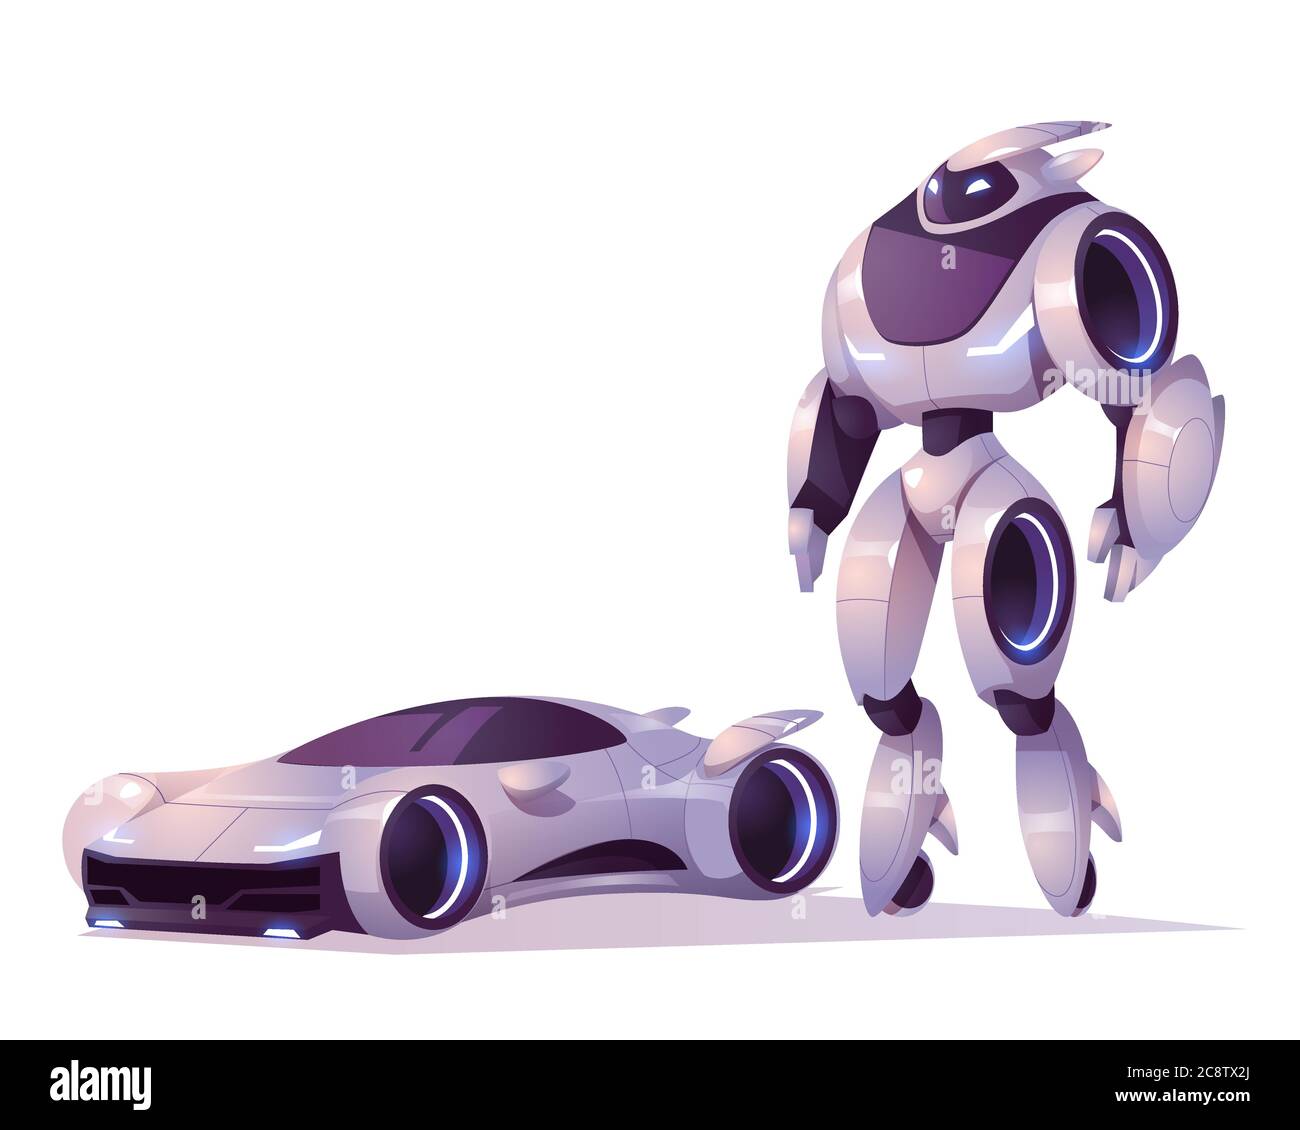 Trasformatore robot in forma di android e auto isolato su sfondo bianco. Cartoni animati vettoriali illustrazione di cyborg futuristico, soldato meccanico, personaggio cyborg Illustrazione Vettoriale